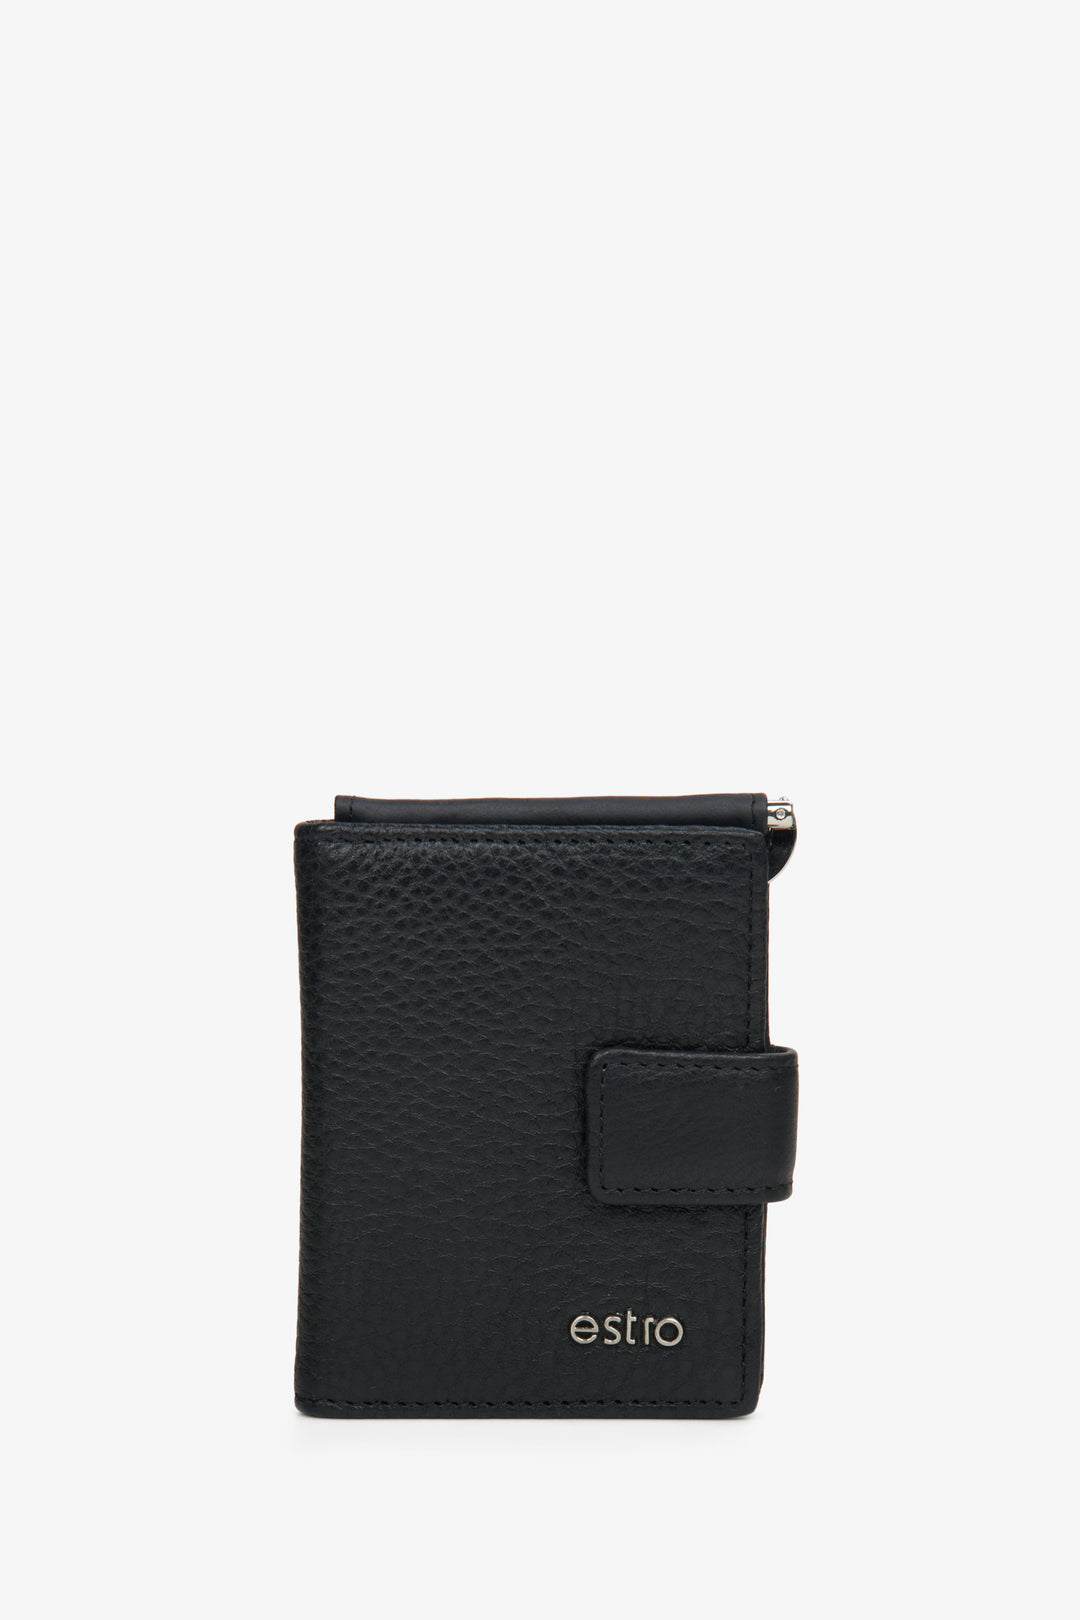 Black leather men's wallet by Estro.